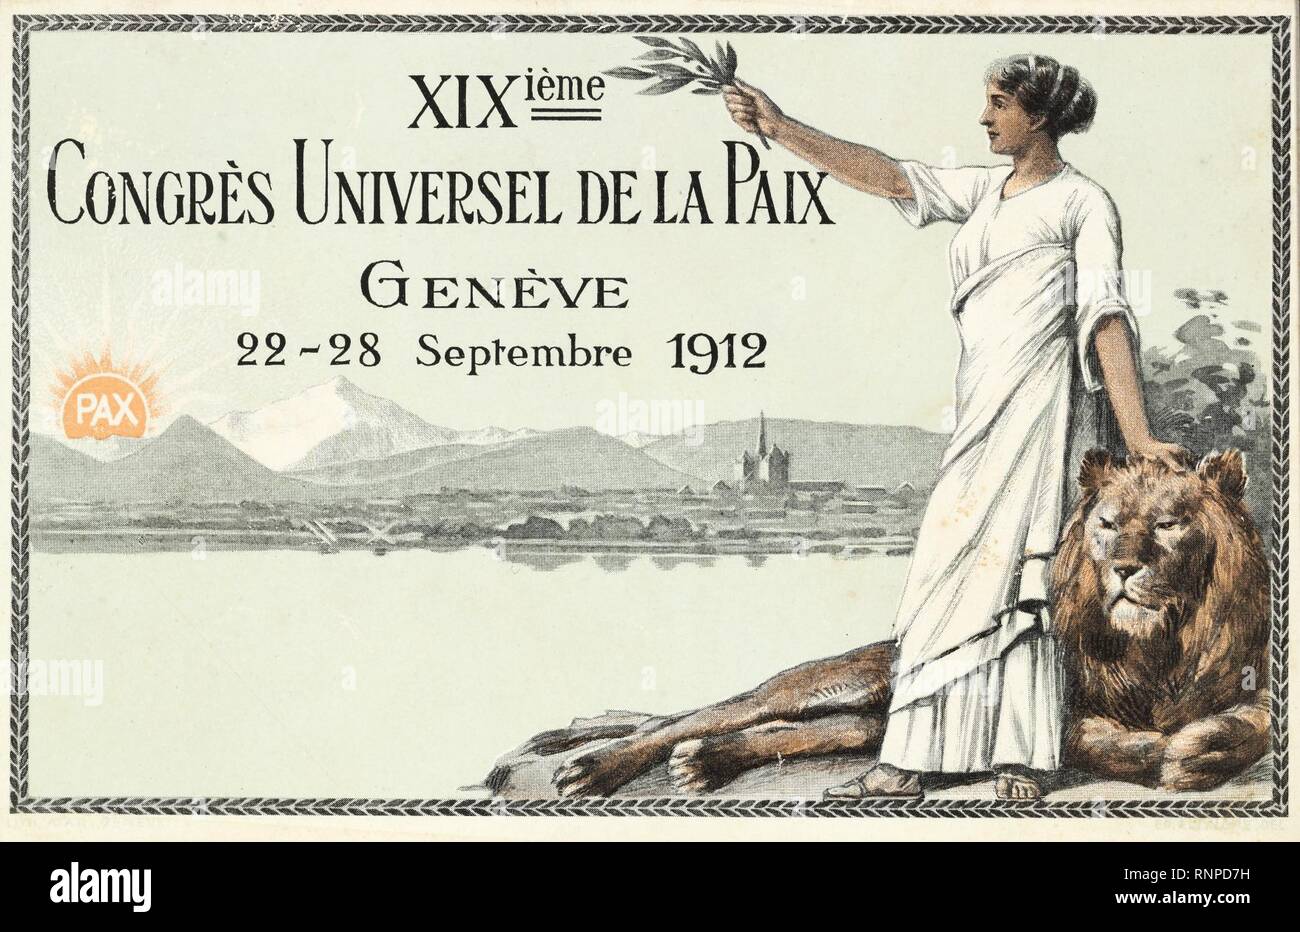 Carte postale du XIXème Congrès universel de la Paix à Genève. Stock Photo